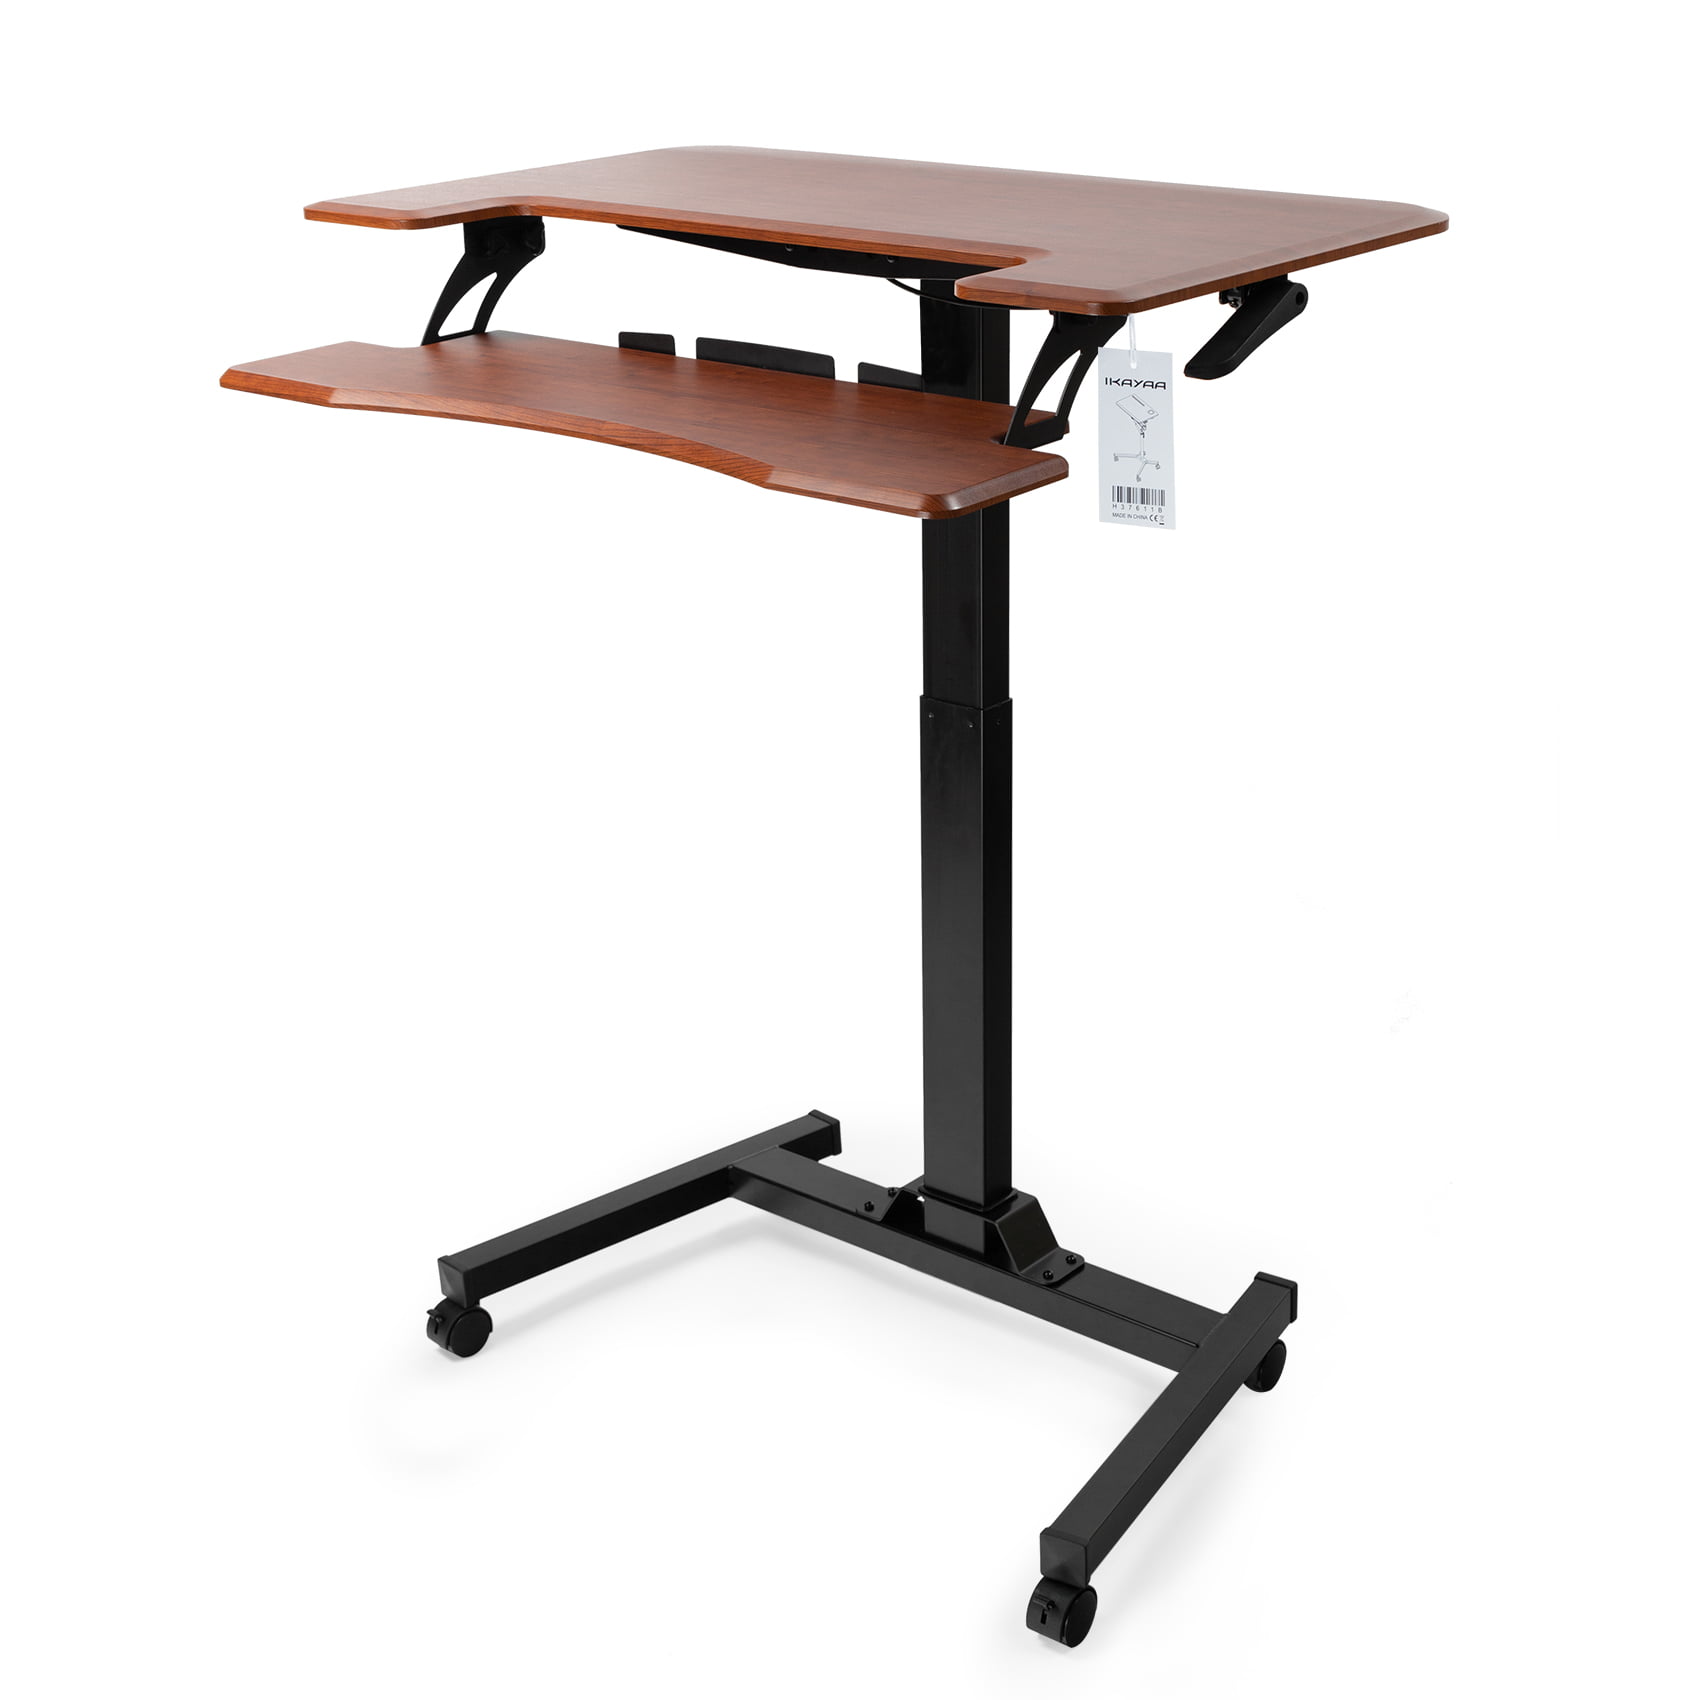 Details about   Computer Desk Table Rolling  2-Shelf Locking Caster Workstation  Adjustable 